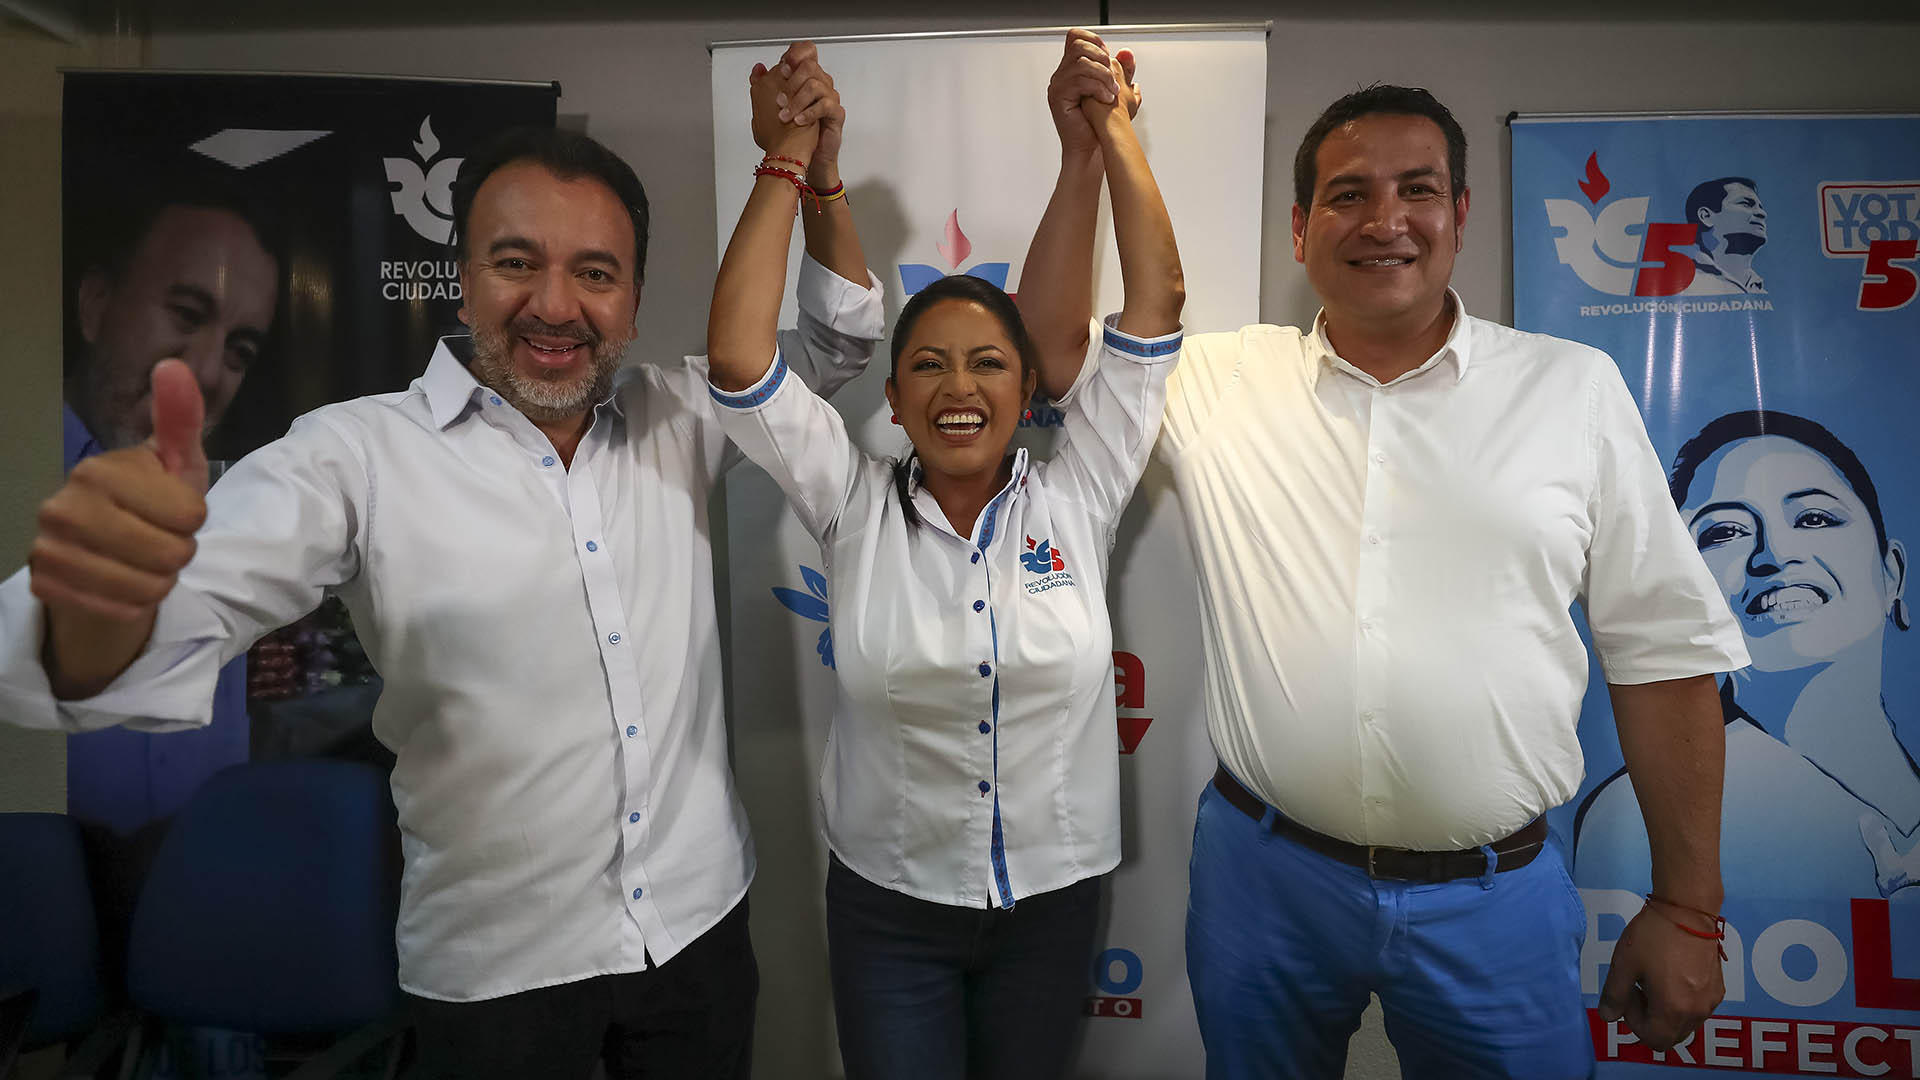 Los candidatos del correísmo, Pabel Muñoz y Paola Pabón, celebran su victoria en Quito y Pichincha. El partido del expresidente Rafael Correa obtuvo importantes municipios y prefecturas en las elecciones subnacionales del domingo. (EFE/José Jácome)
